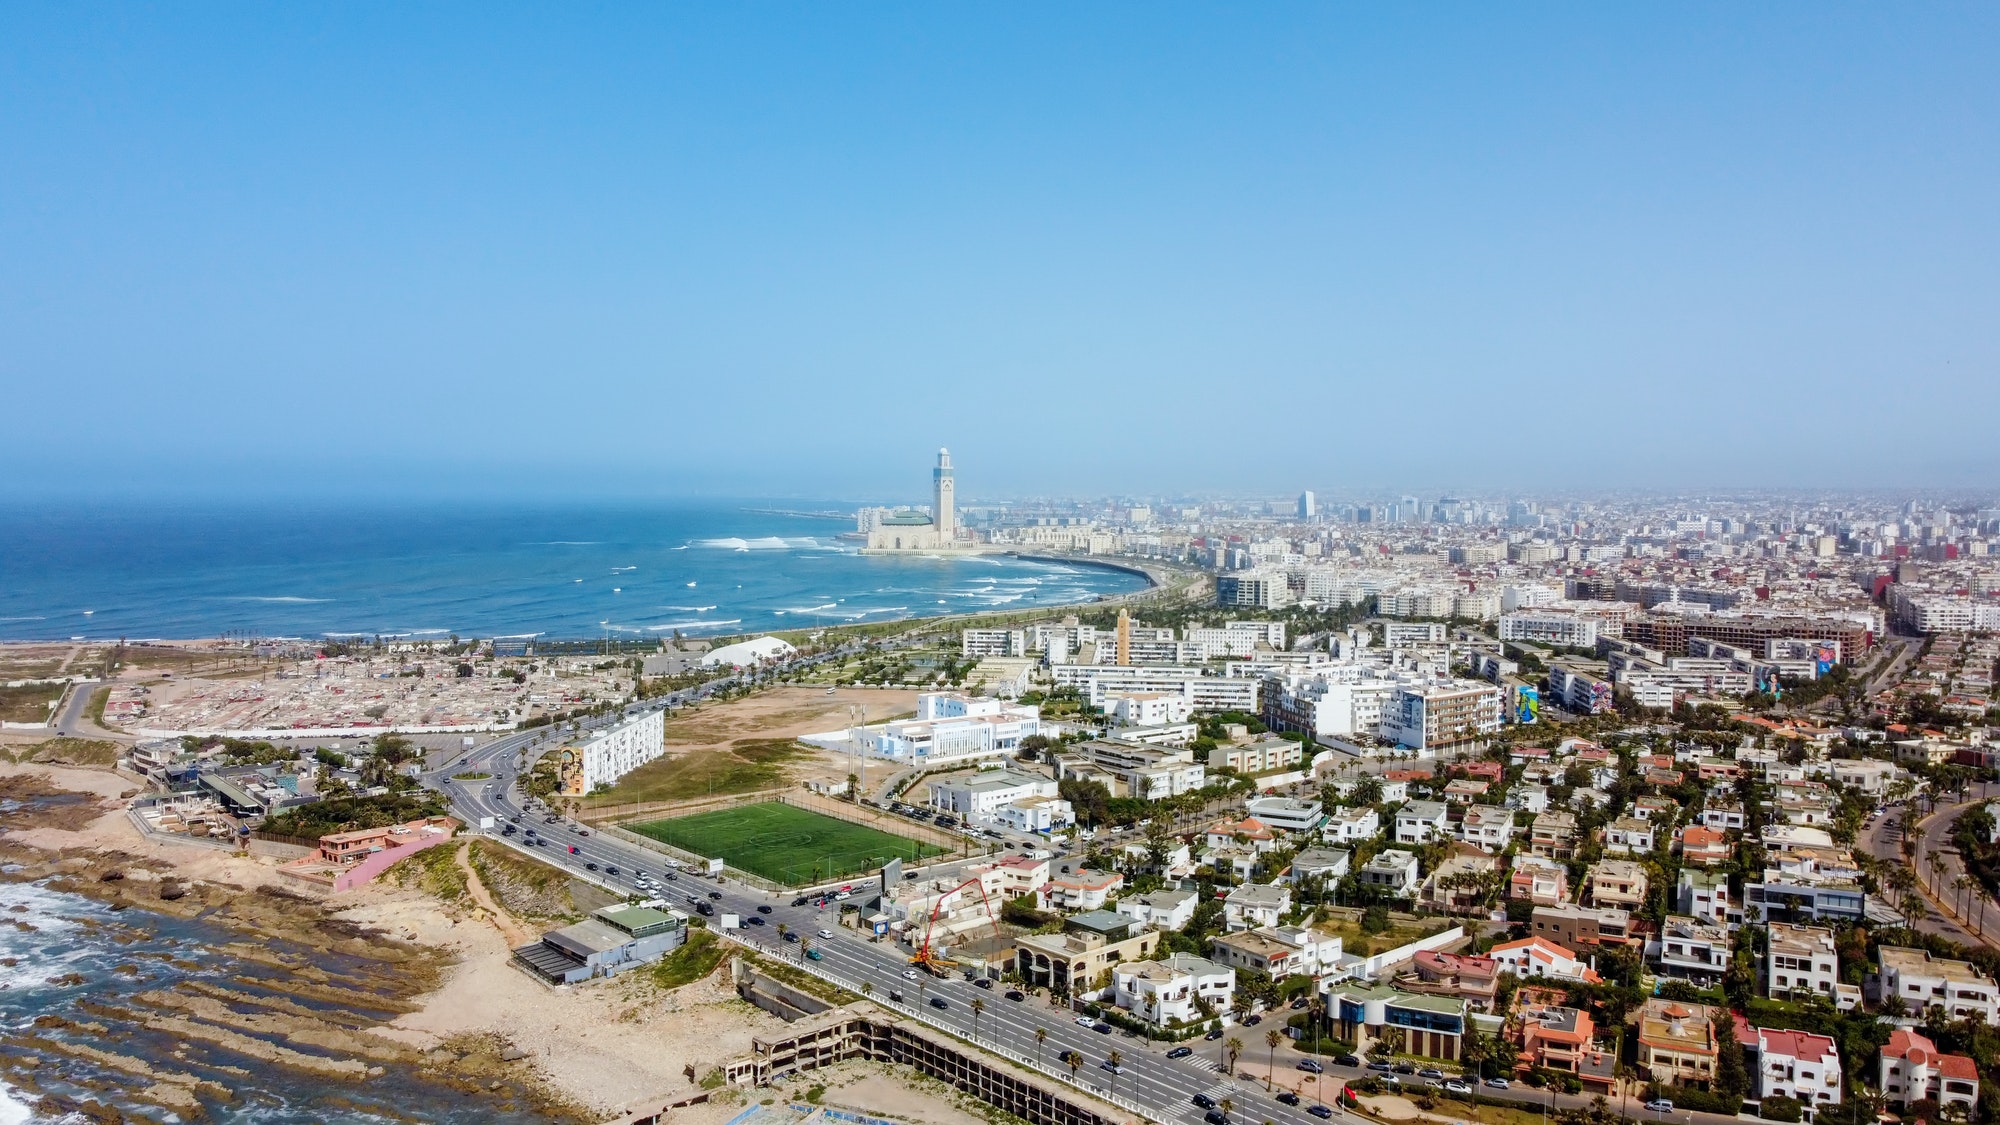 Aerial drone view of Casablanca, Morocco